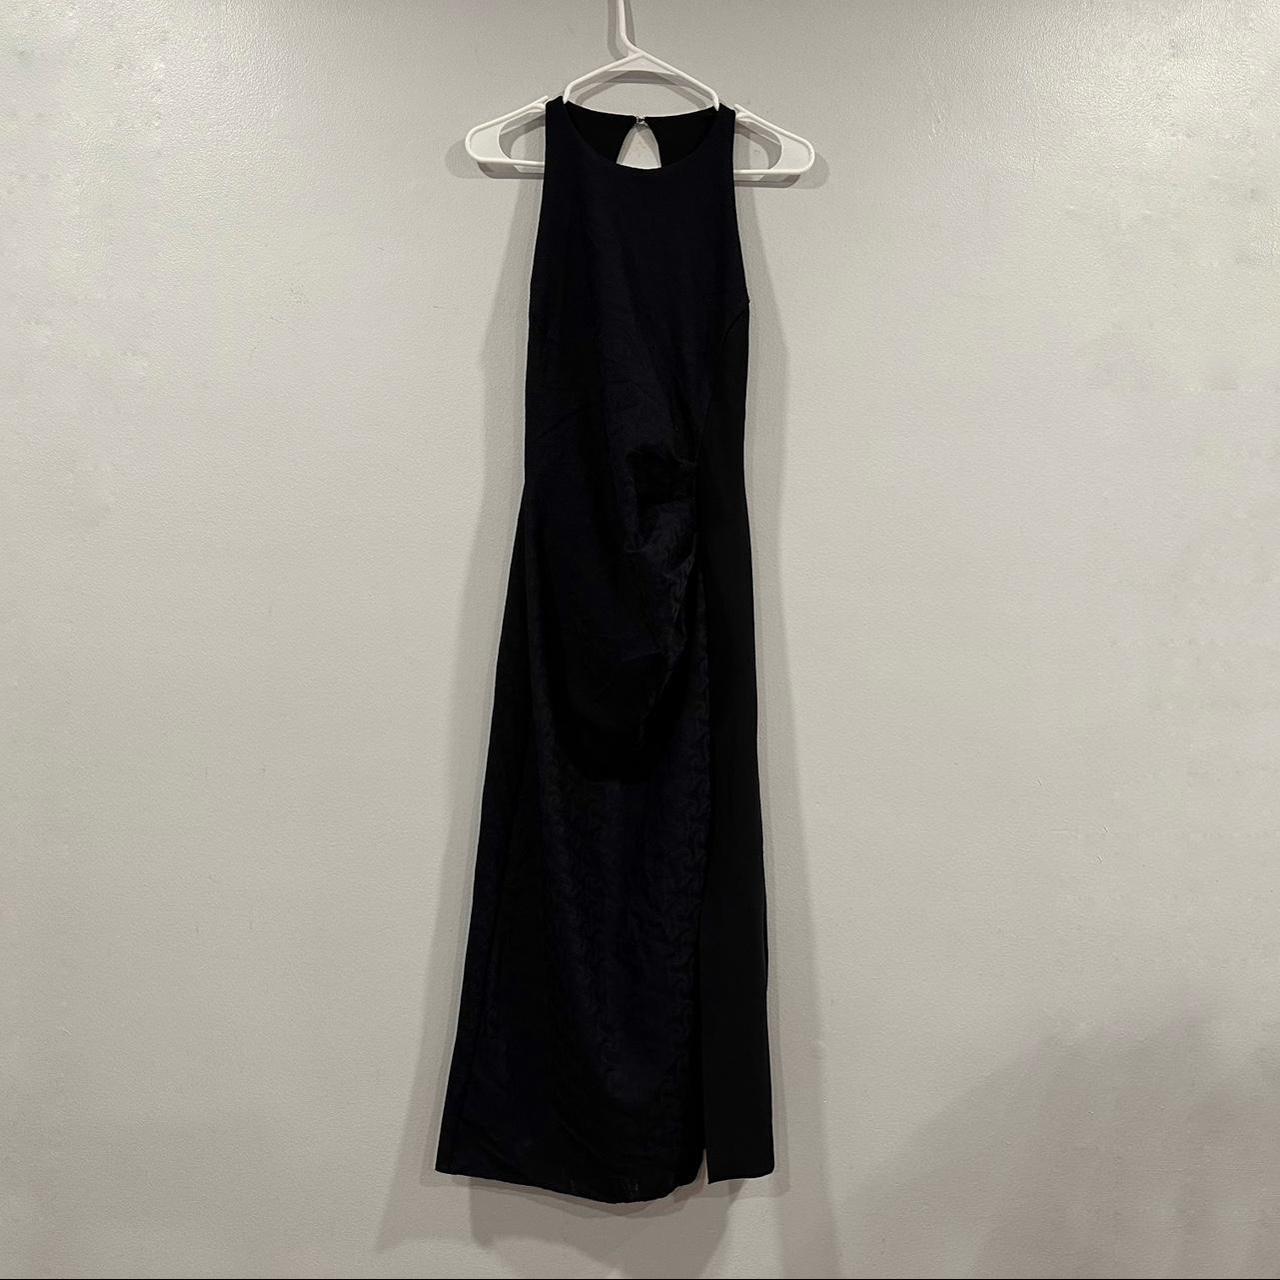 Chiara Boni La Petite Robe Women's Dress